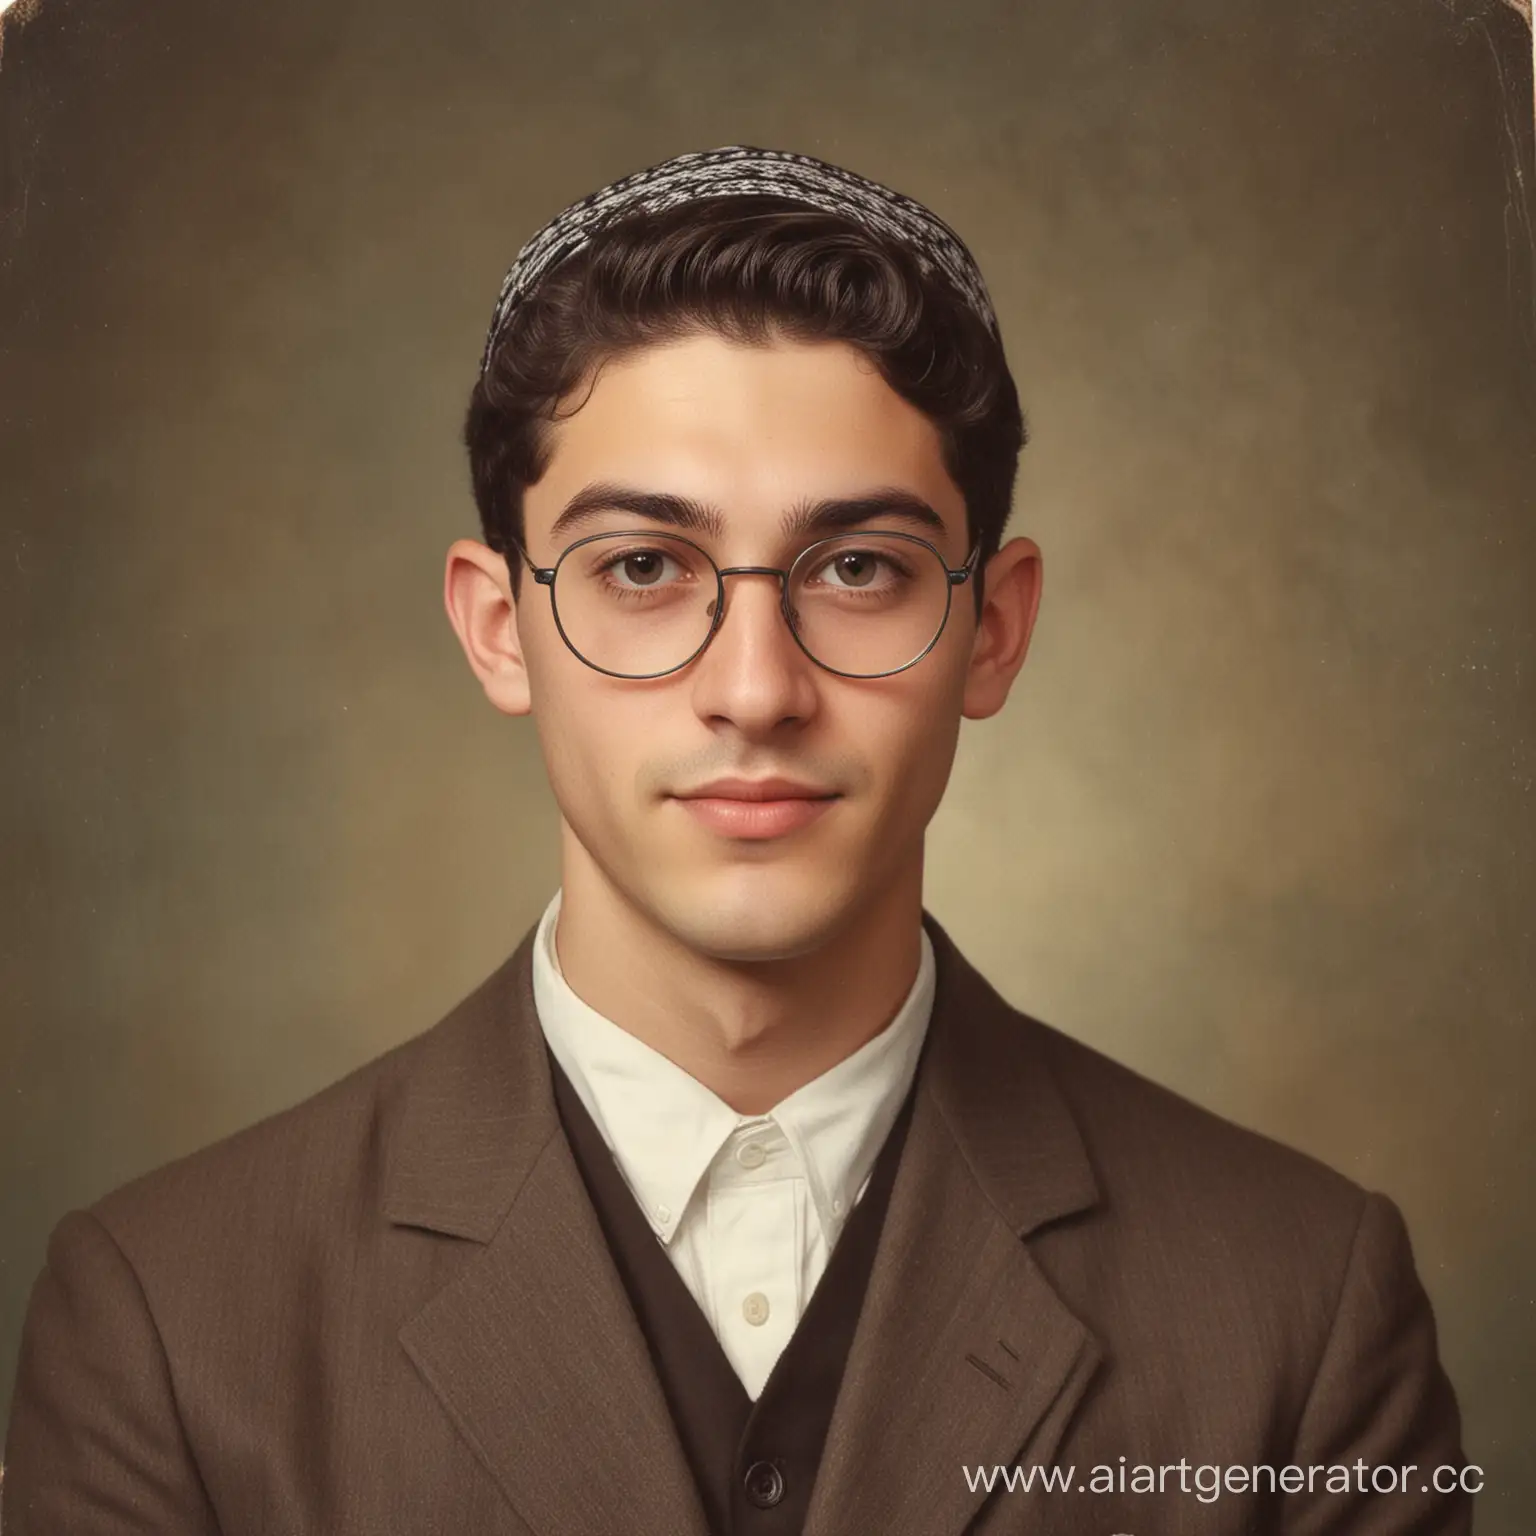 Портрет молодого человека по имени Израиль Фельдман. Еврей, гладко выбрит, волосы уложены на пробор, на голове кипа, на глазах очки.